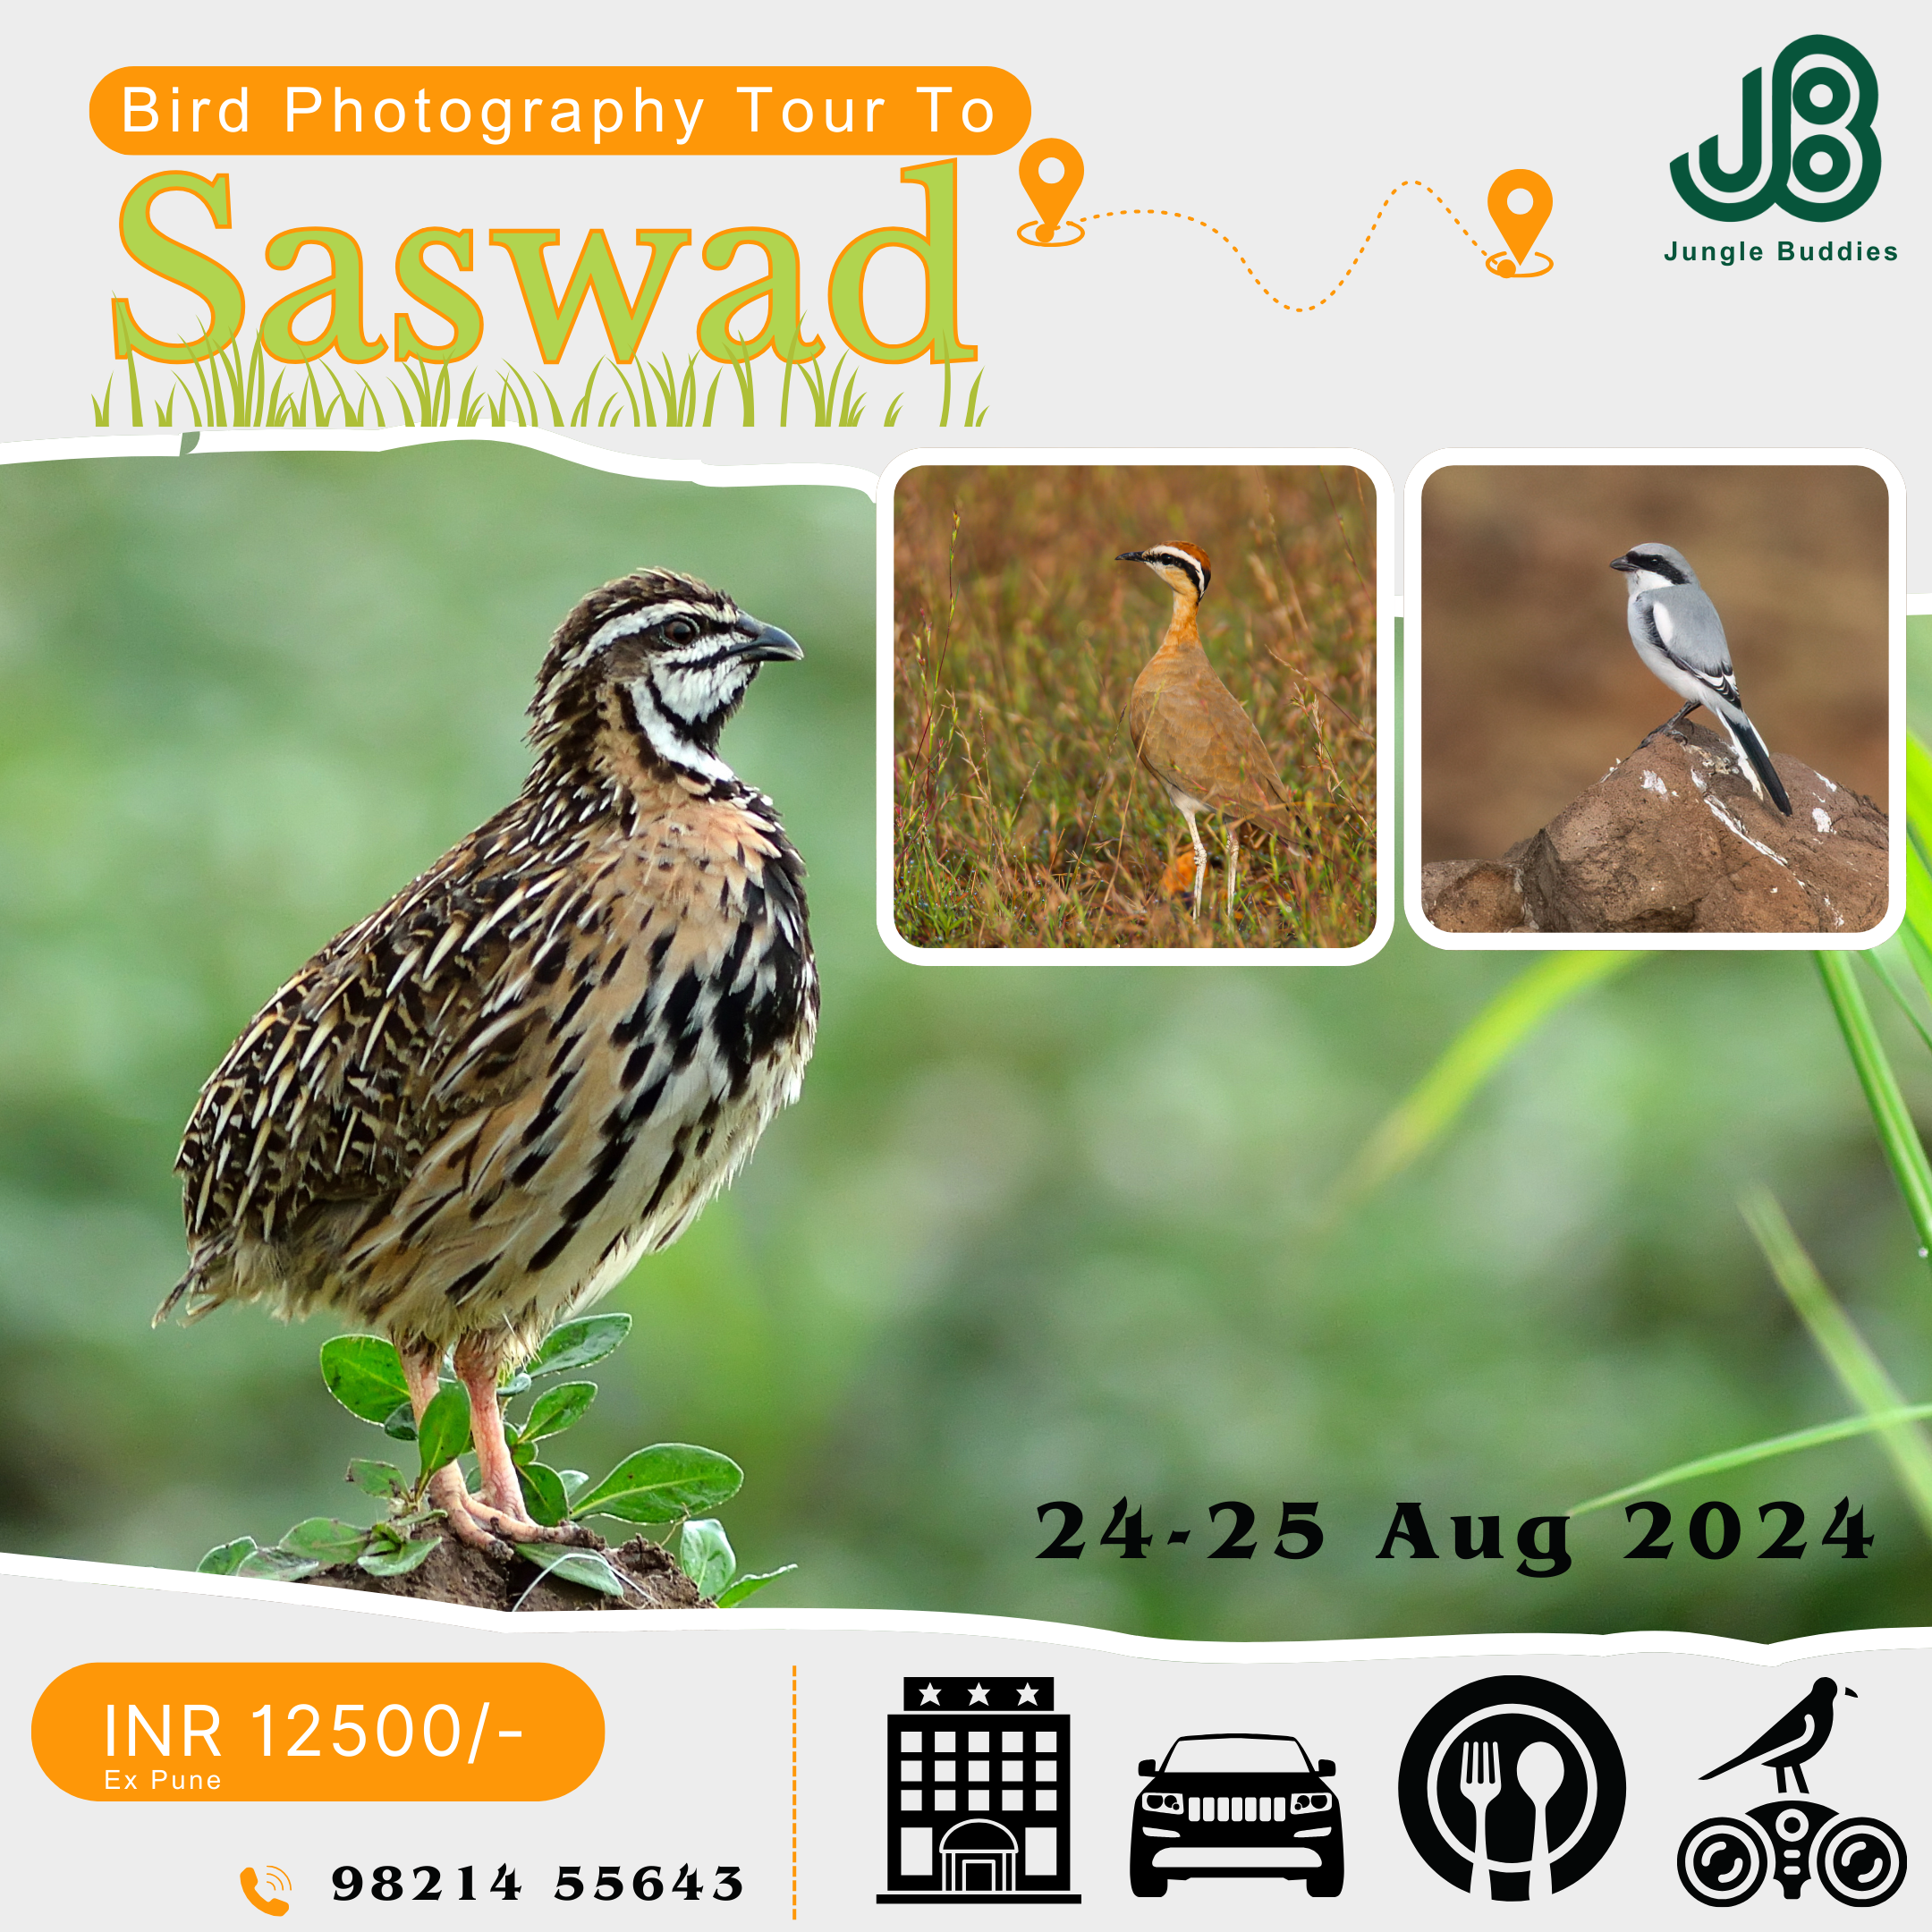 Saswad Grasslands